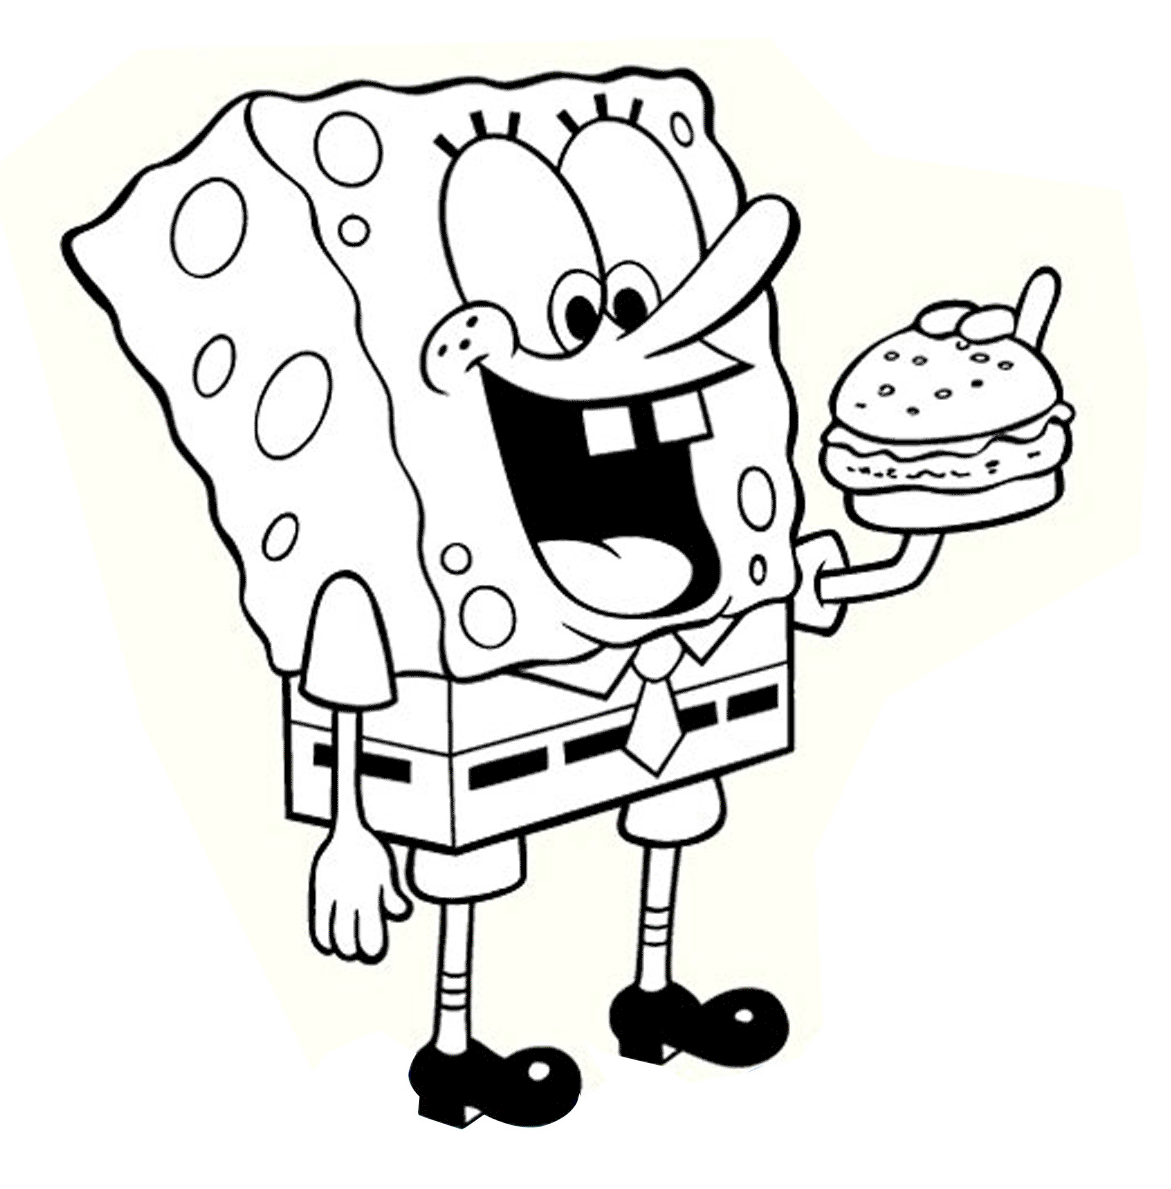 Printable Cartoon spongebob eating hamburger coloring page